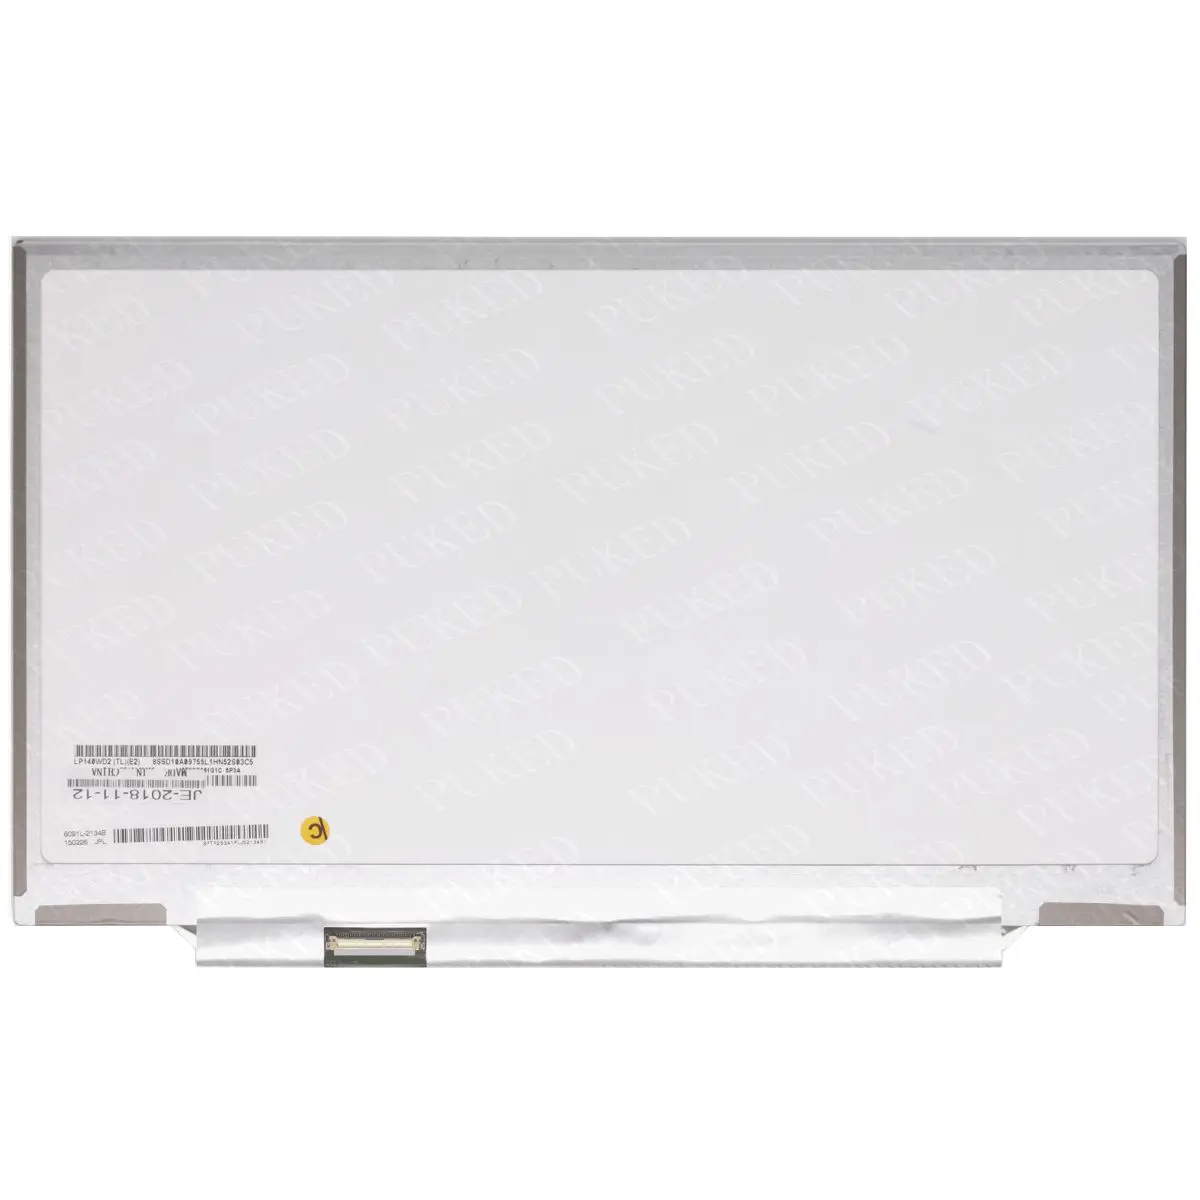 Оригинальный для ноутбука Lenovo Thinkpad X1 Carbon ЖК-светодиодный экран LP140WD2-TLE2 LP140WD2 (TL) (E2) 1600*900 FRU 04X1756 0